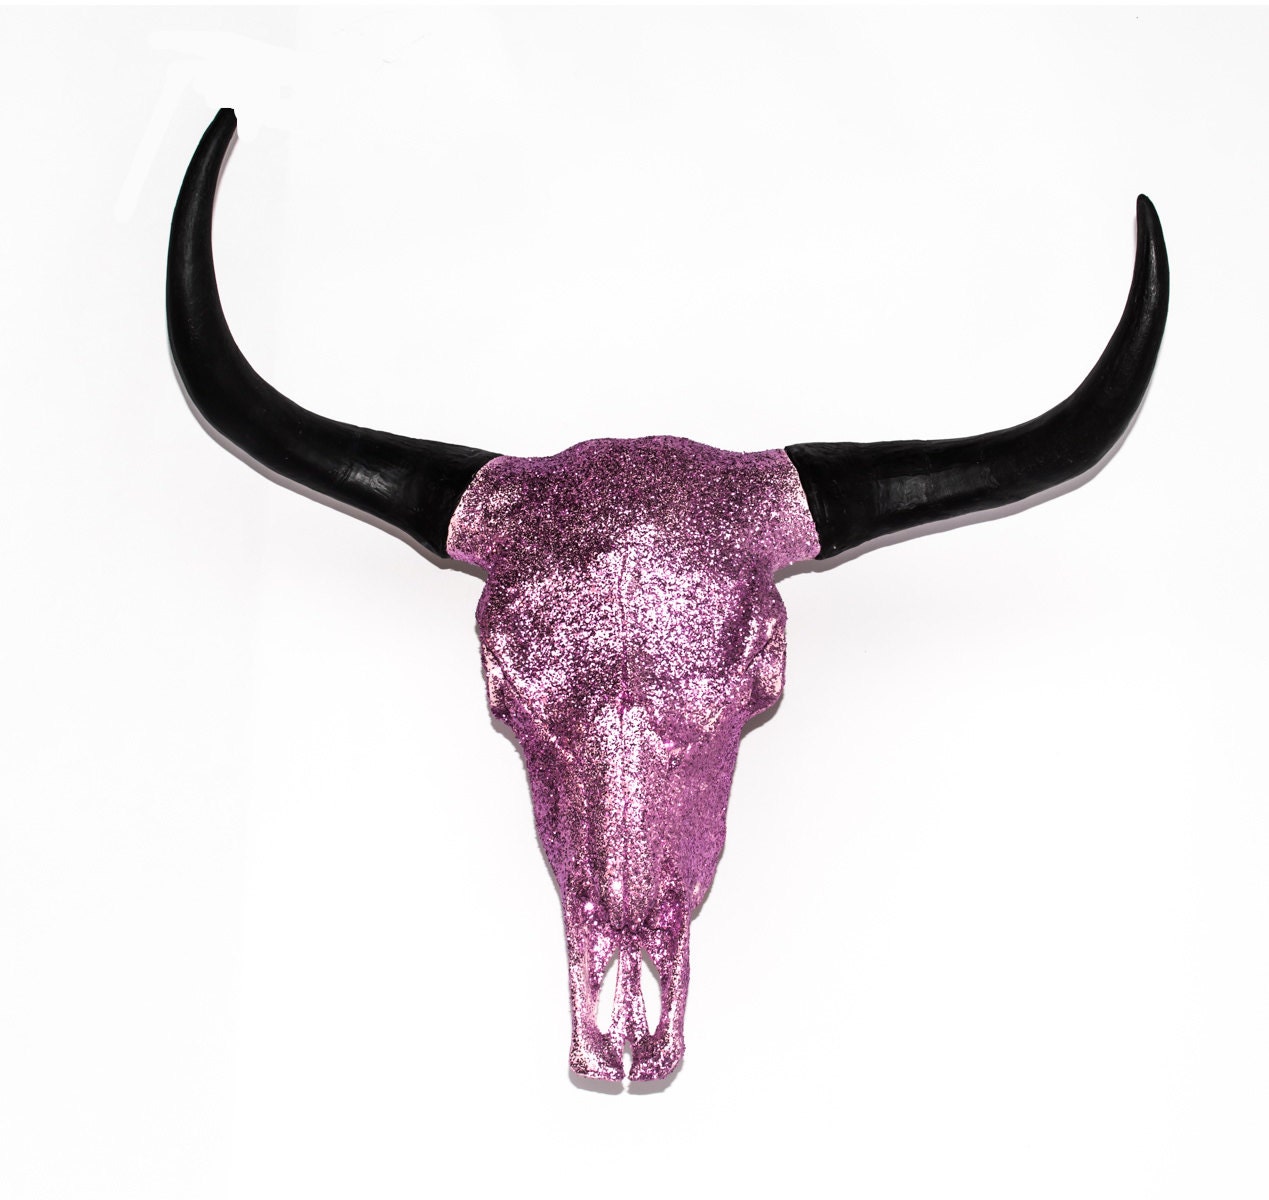 Bull/Steer/Cow Skull 23 Wide Pink Glitter SKULL ART